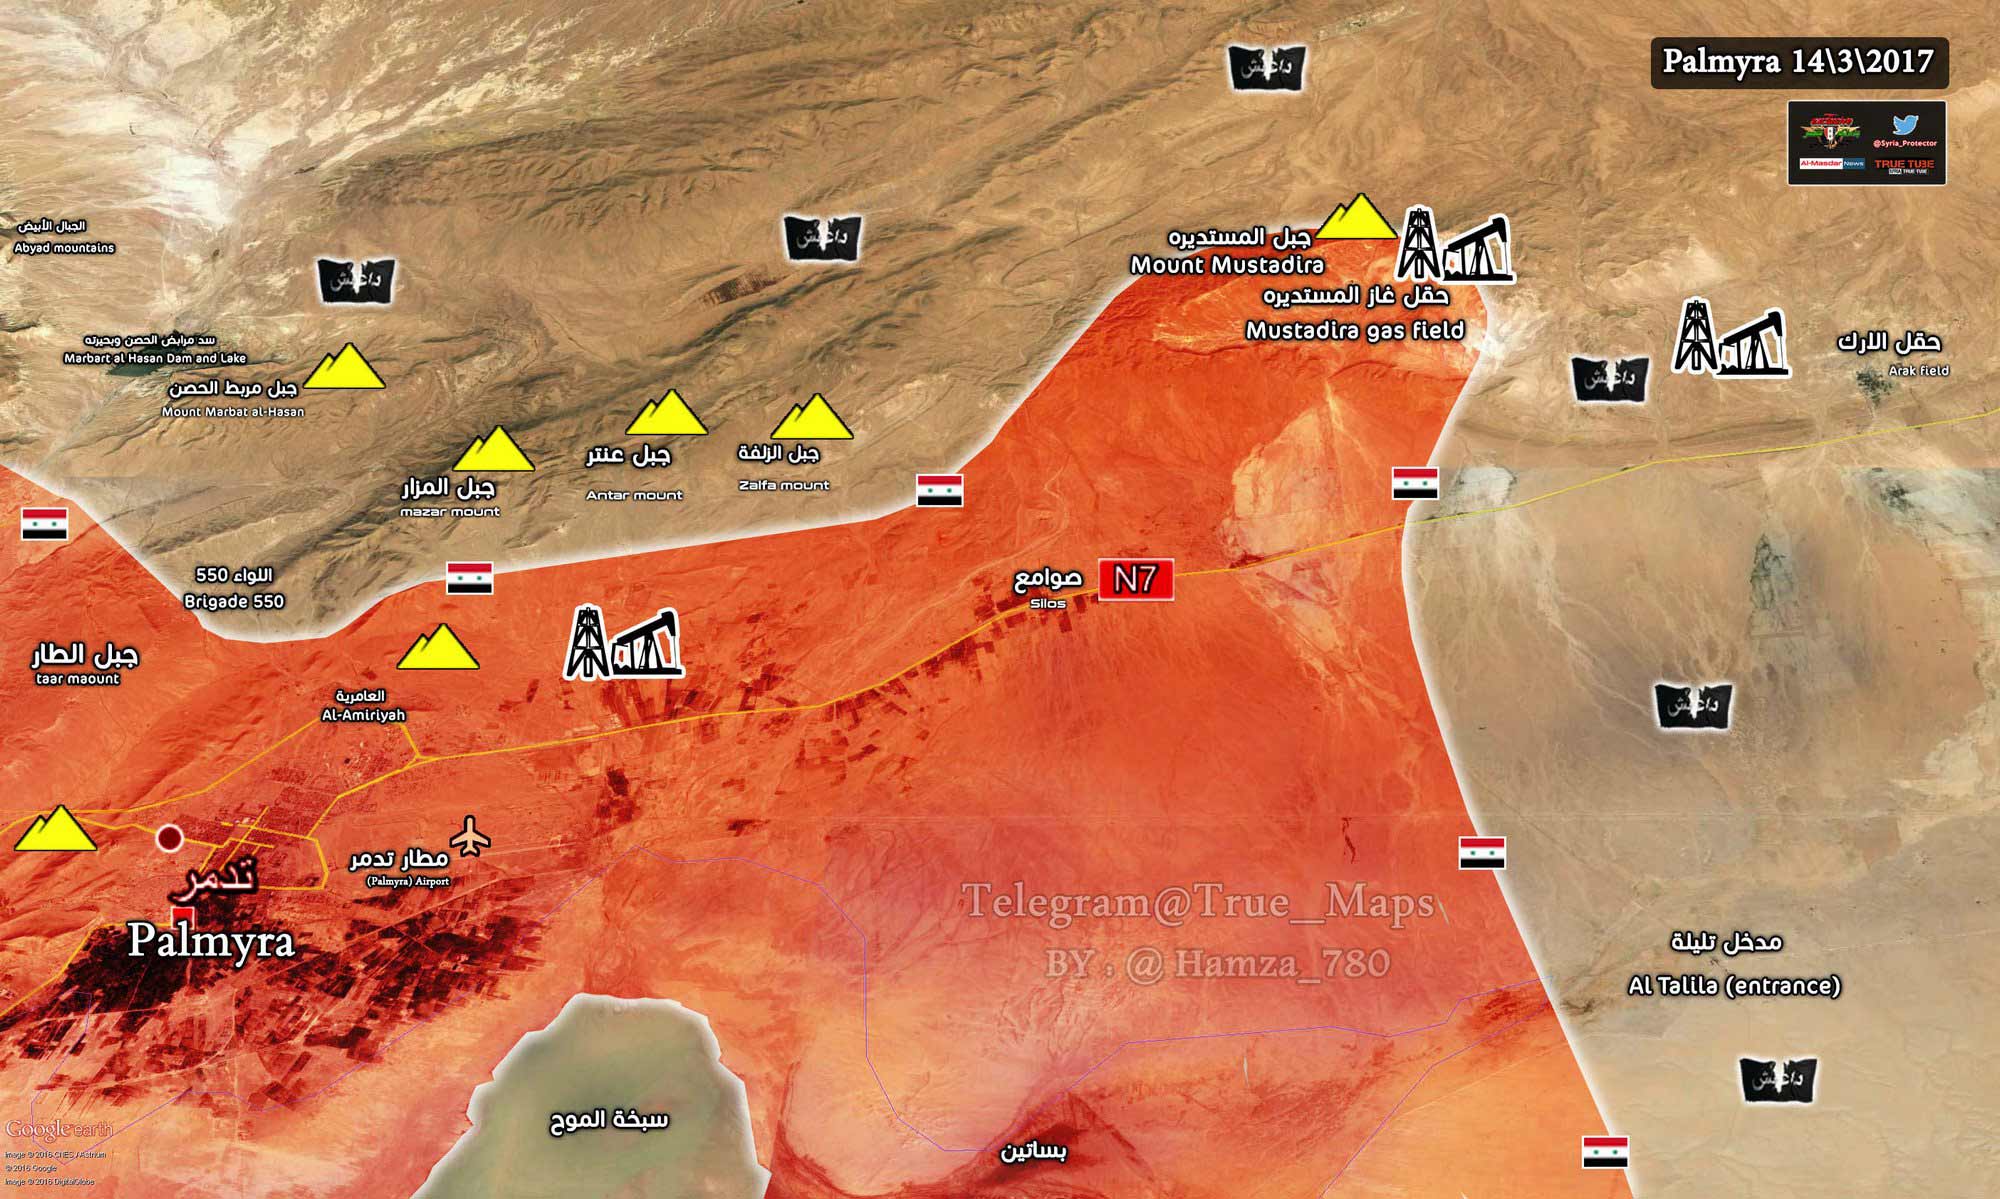 Сирийская армия взяла газовое месторождение Мустадира